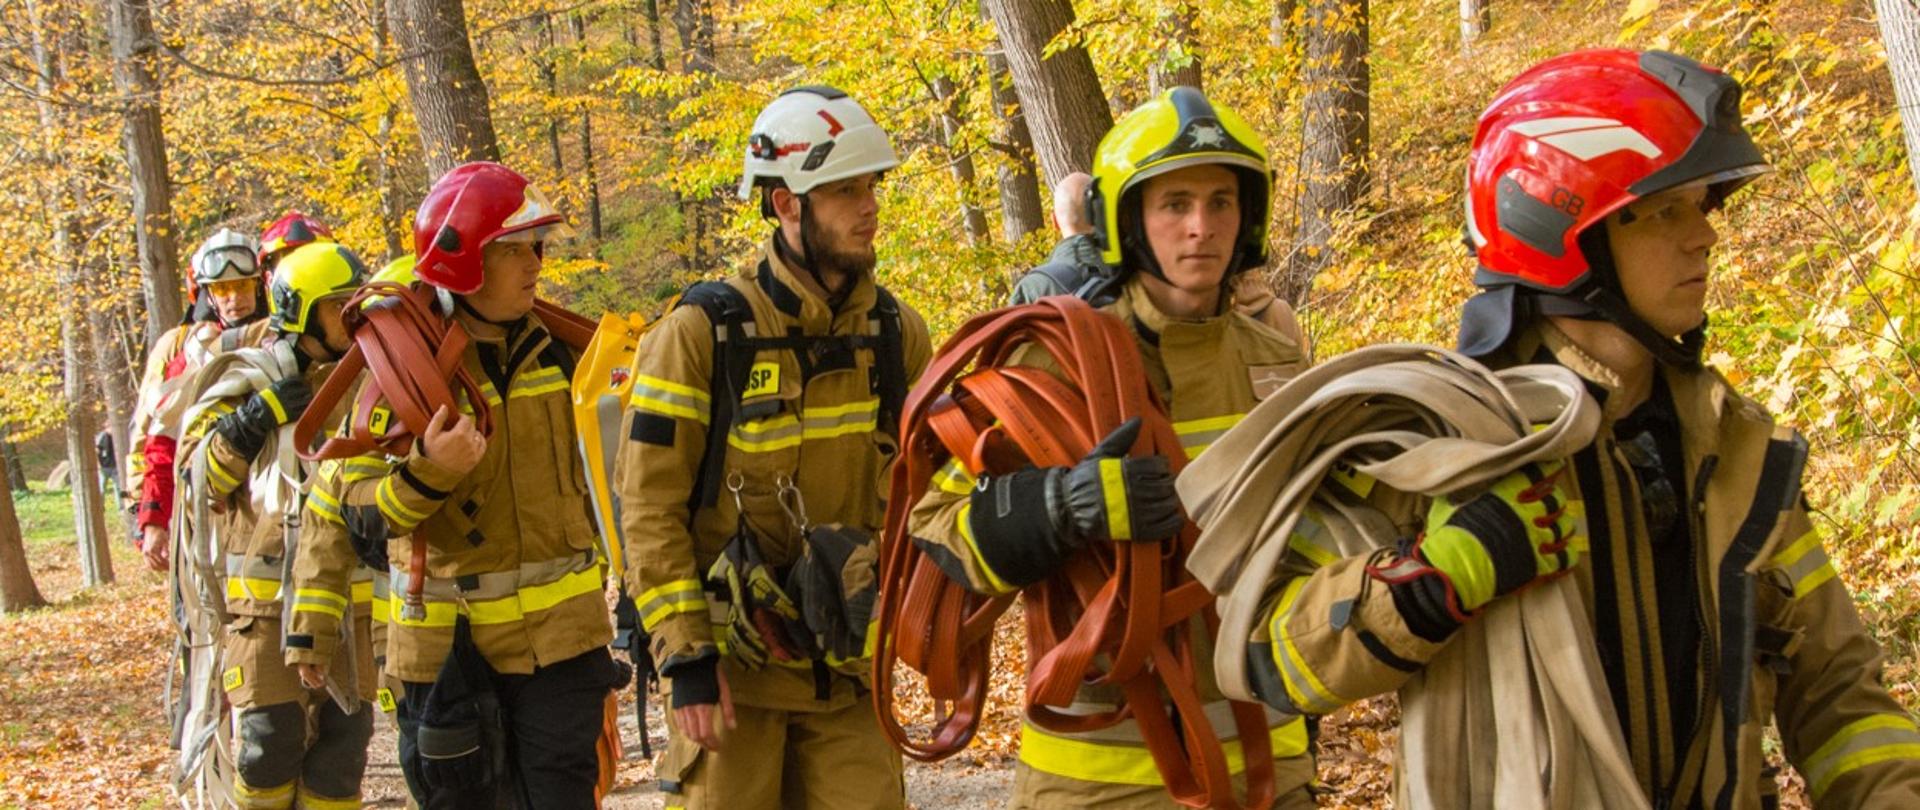 Udział dzierżoniowskich strażaków w warsztatach pn. "Zaopatrzenie wodne i działania gaśnicze w lasach i terenach otwartych"